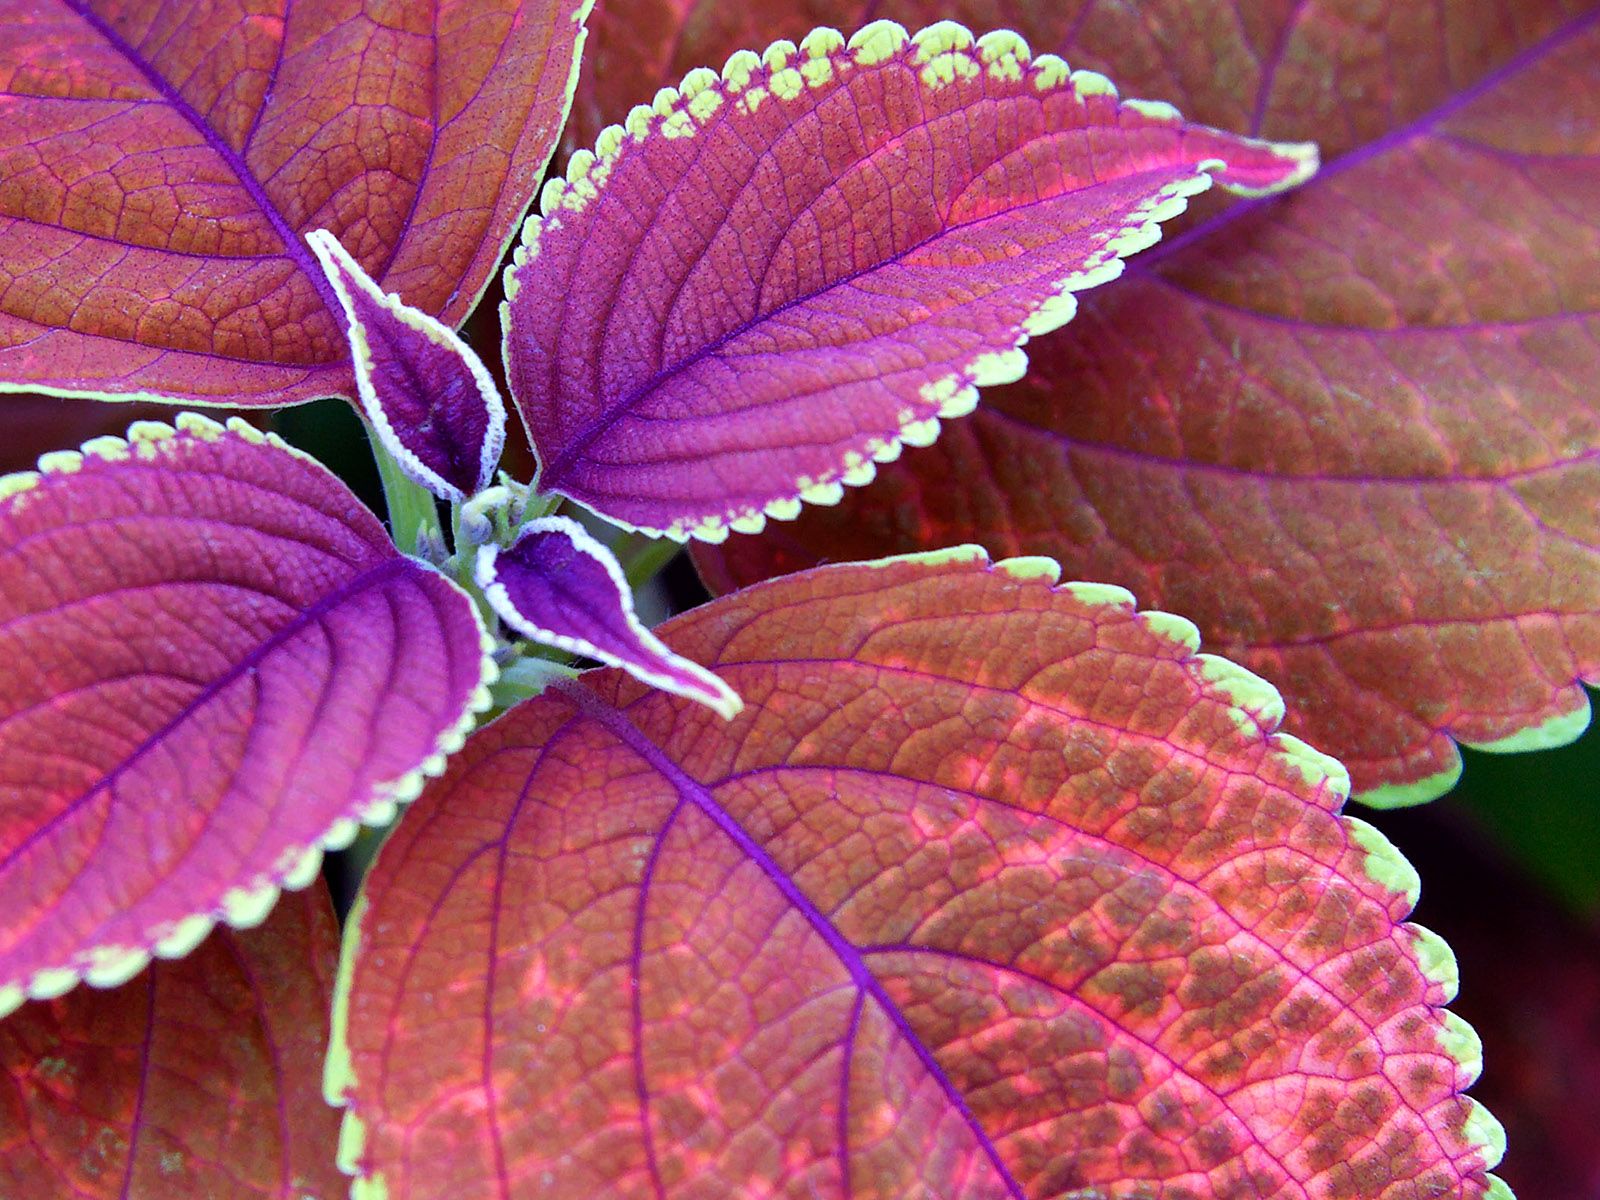 Few purple leaves wallpaper. Few purple leaves